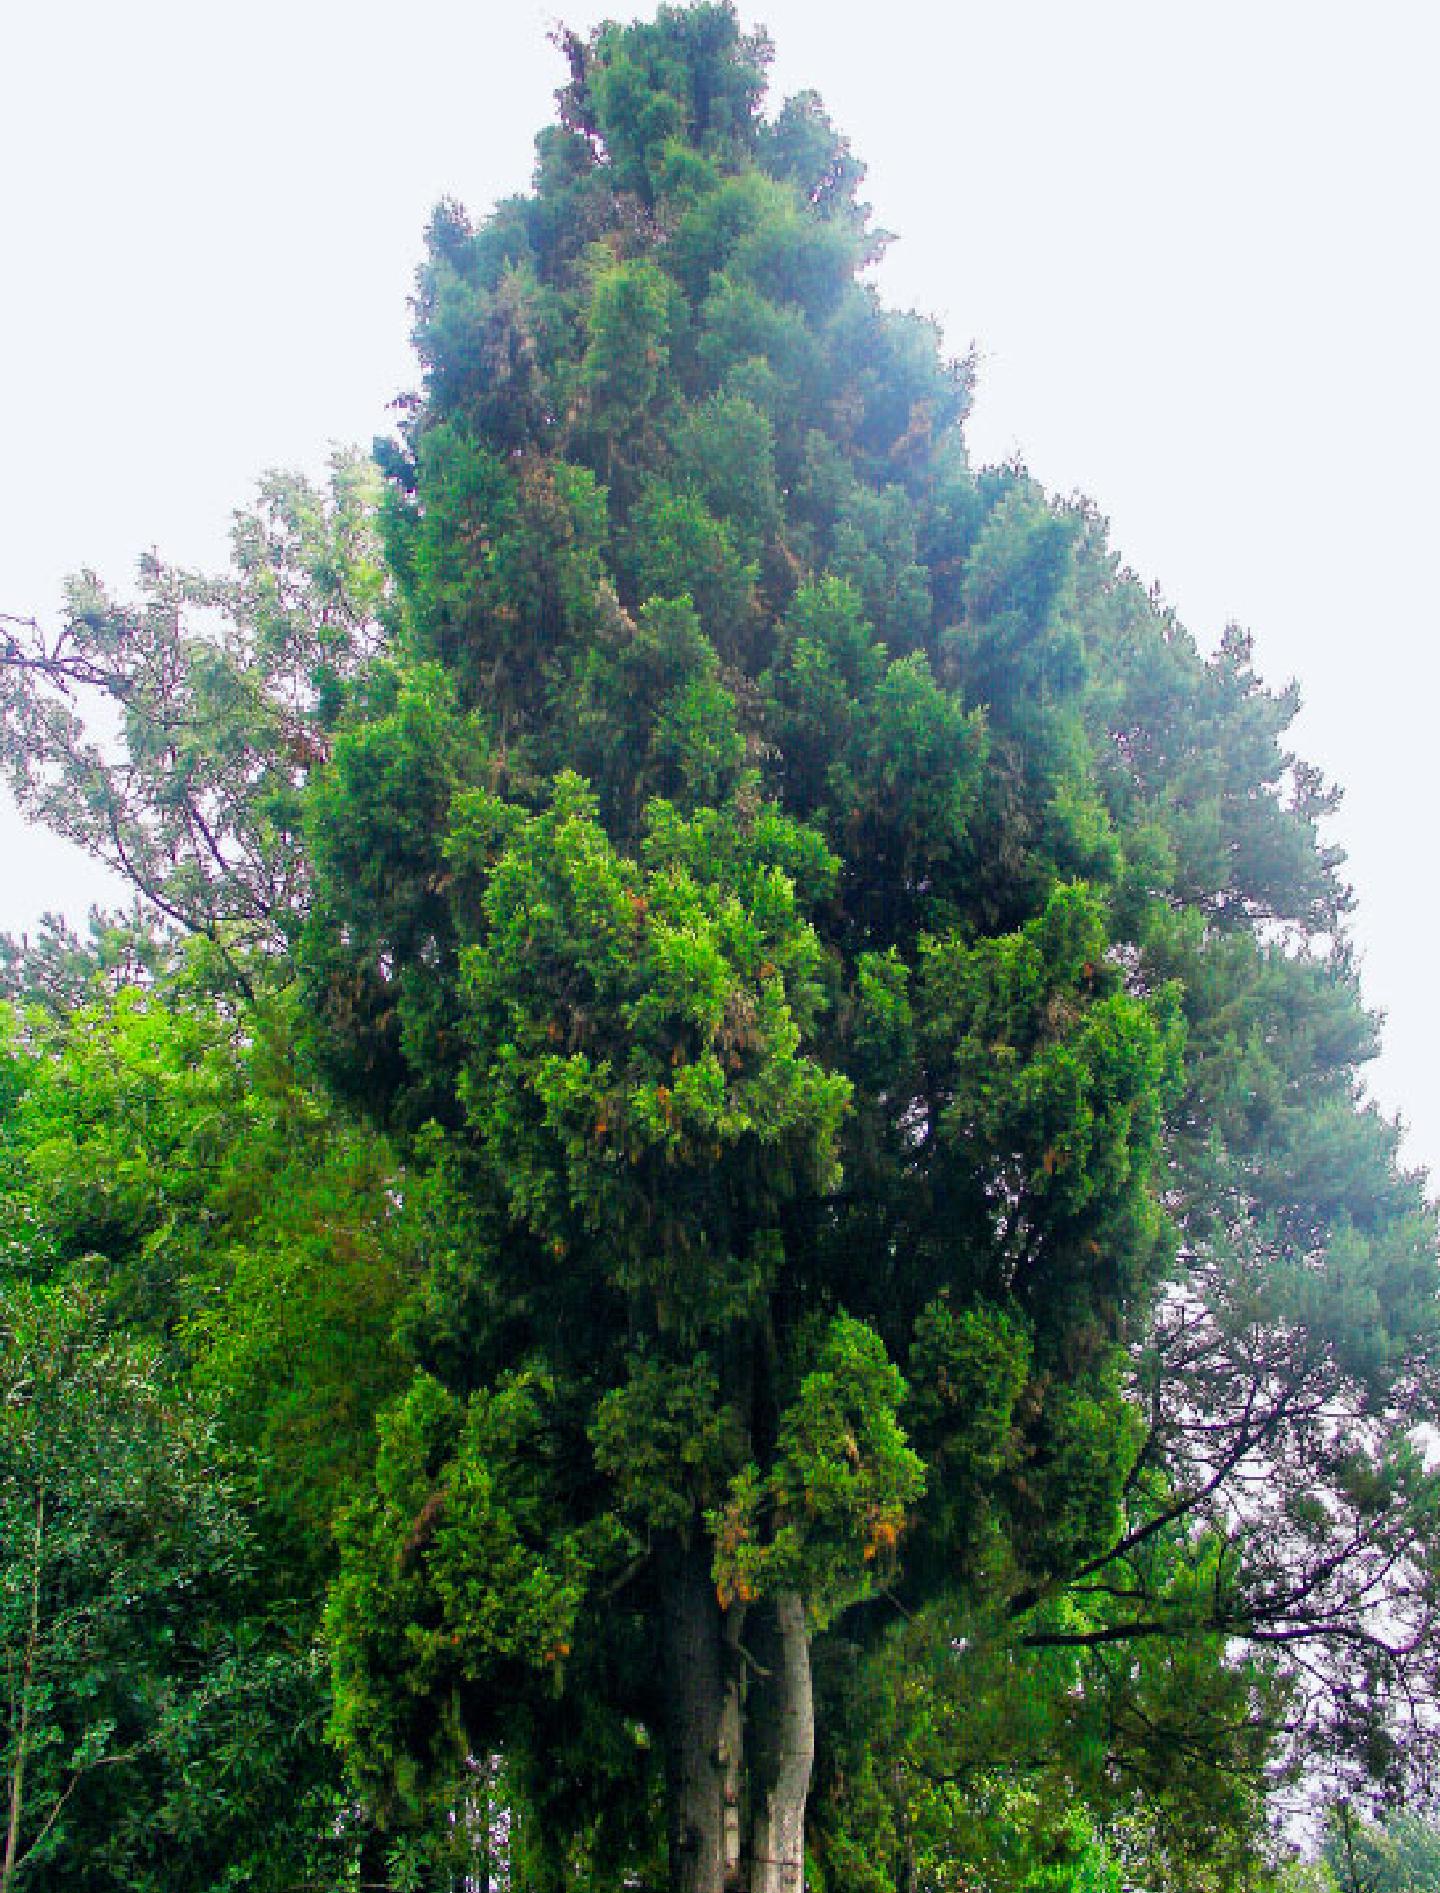 200 多张免费的“柏树”和“自然”照片 - Pixabay